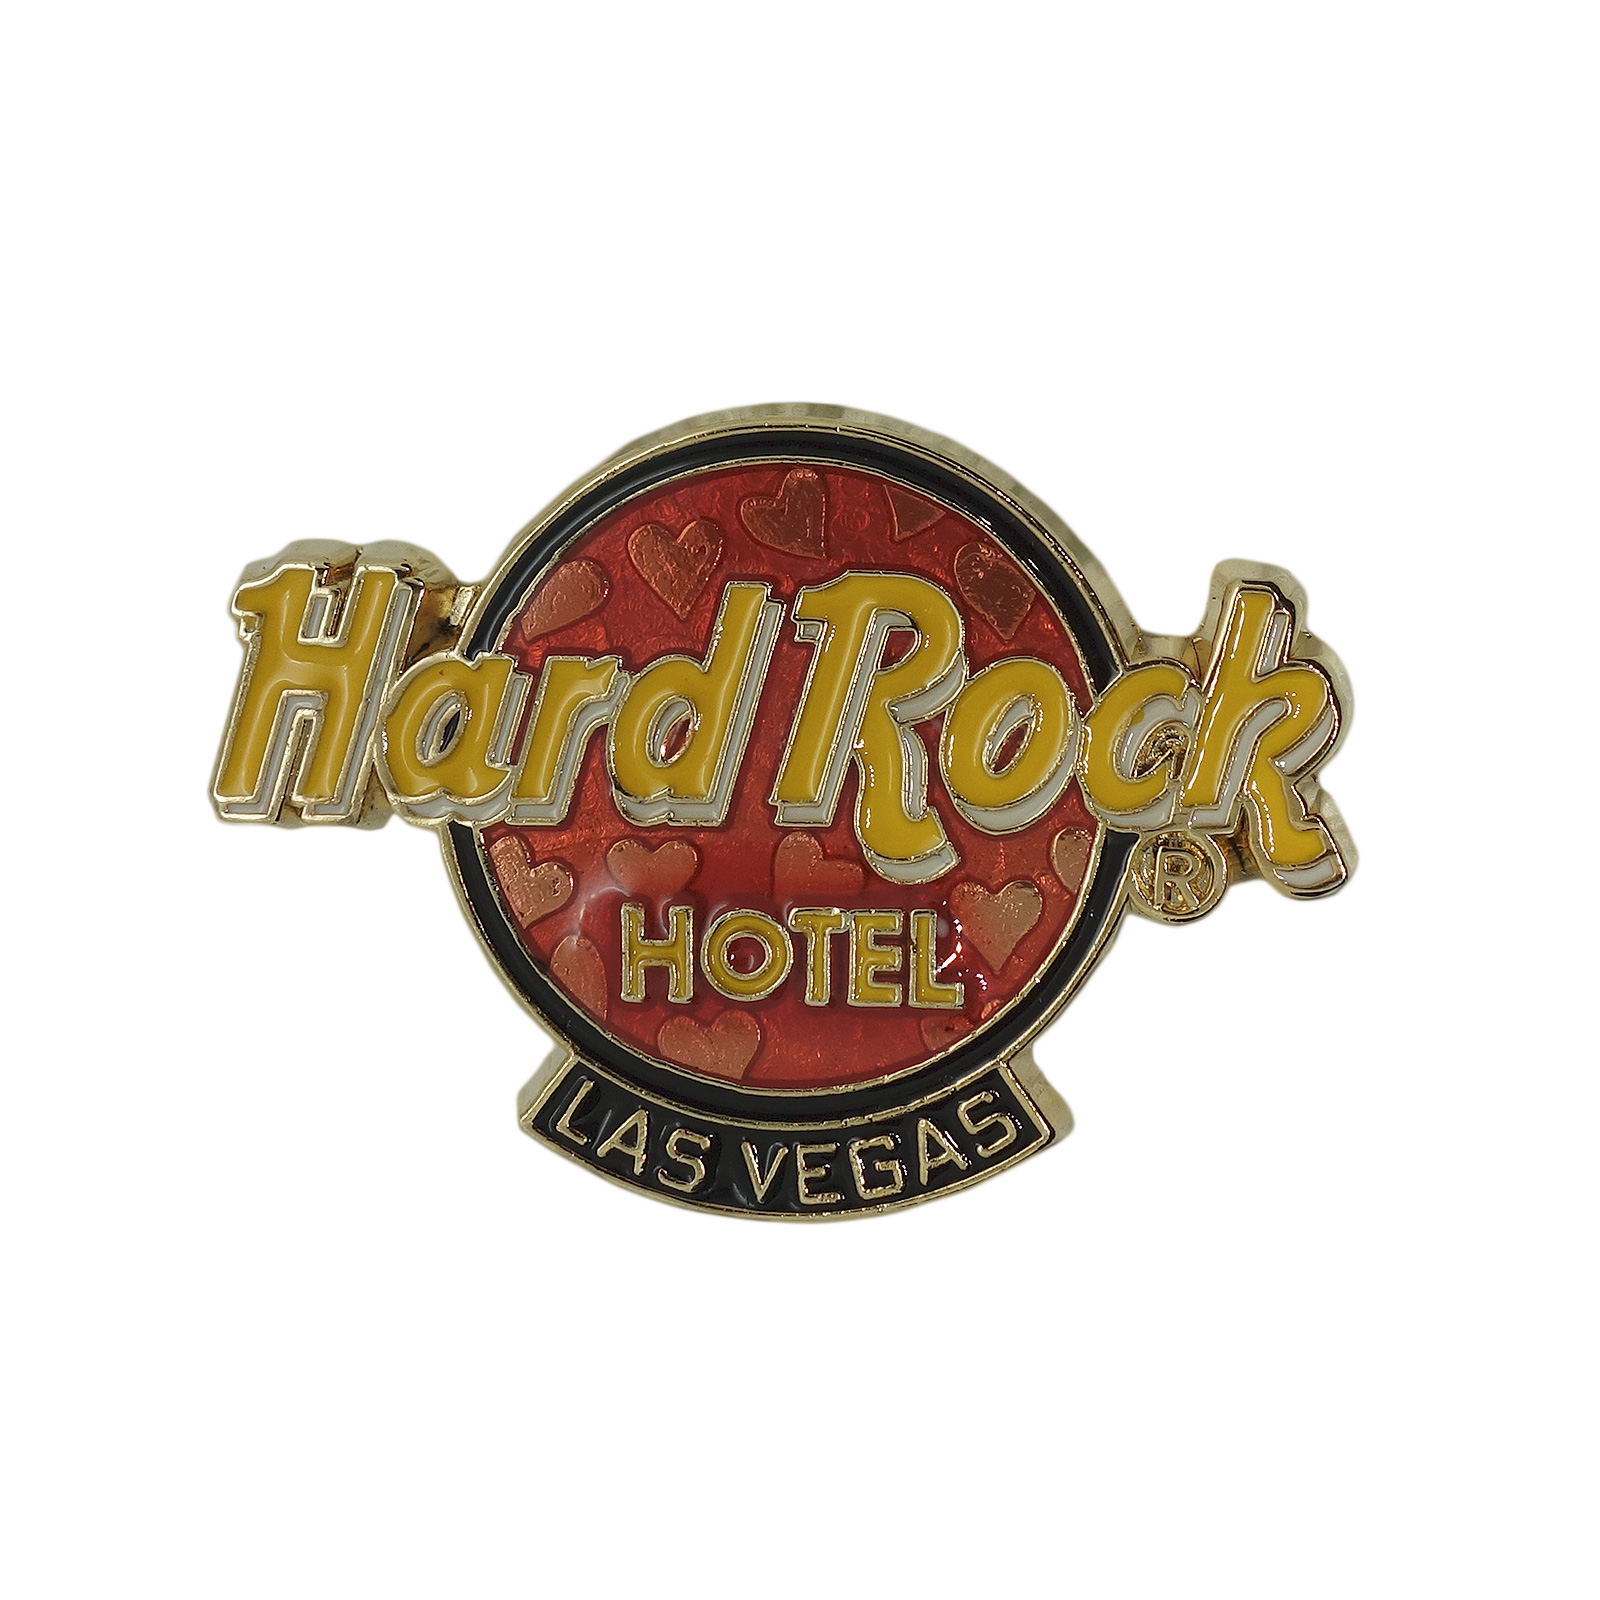 Hard Rock HOTEL トランプ ハート ピンズ ハードロックカフェ LAS VEGAS